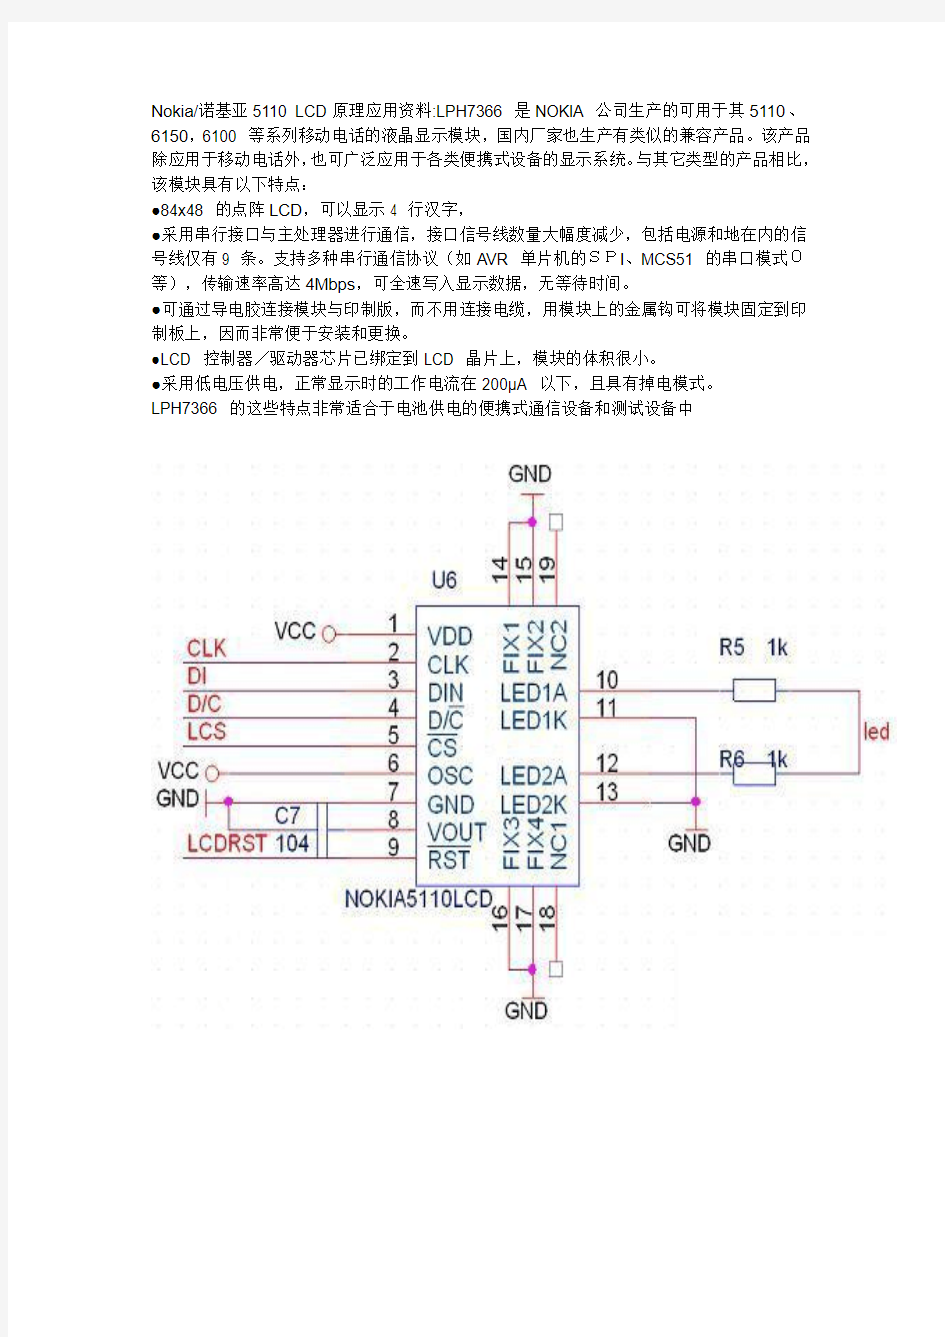 LCD5110中文资料